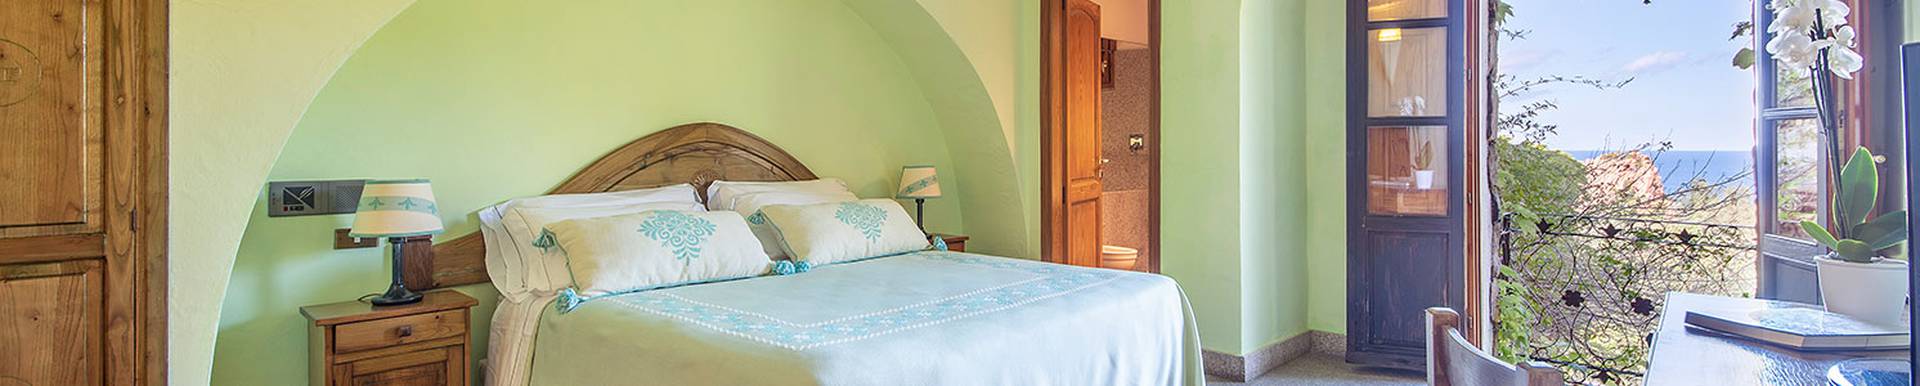 Blau hotels - Arbatax - Sardegna - 